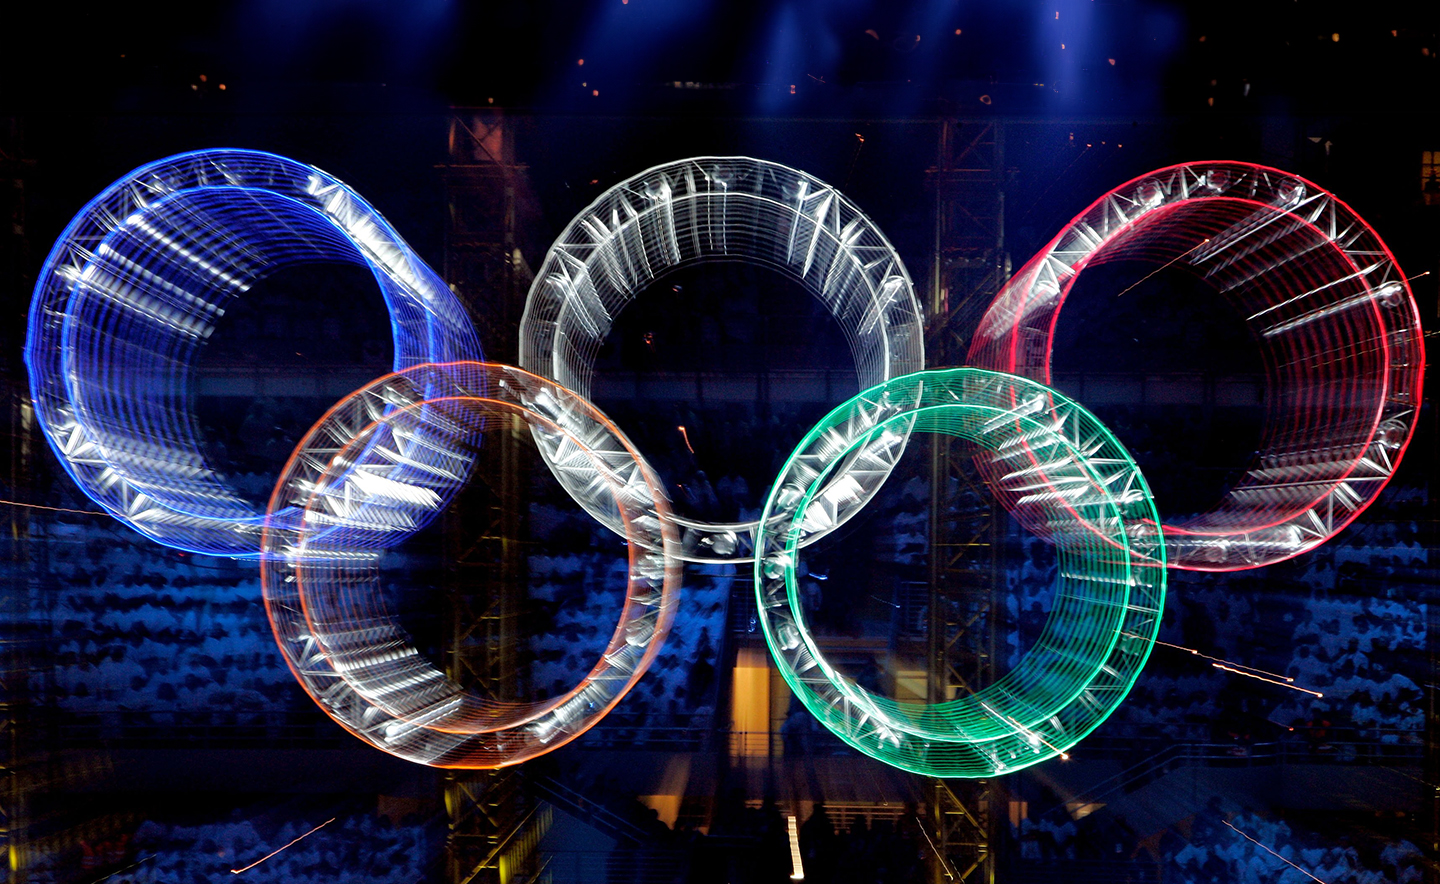 Die fünf olympischen Ringe